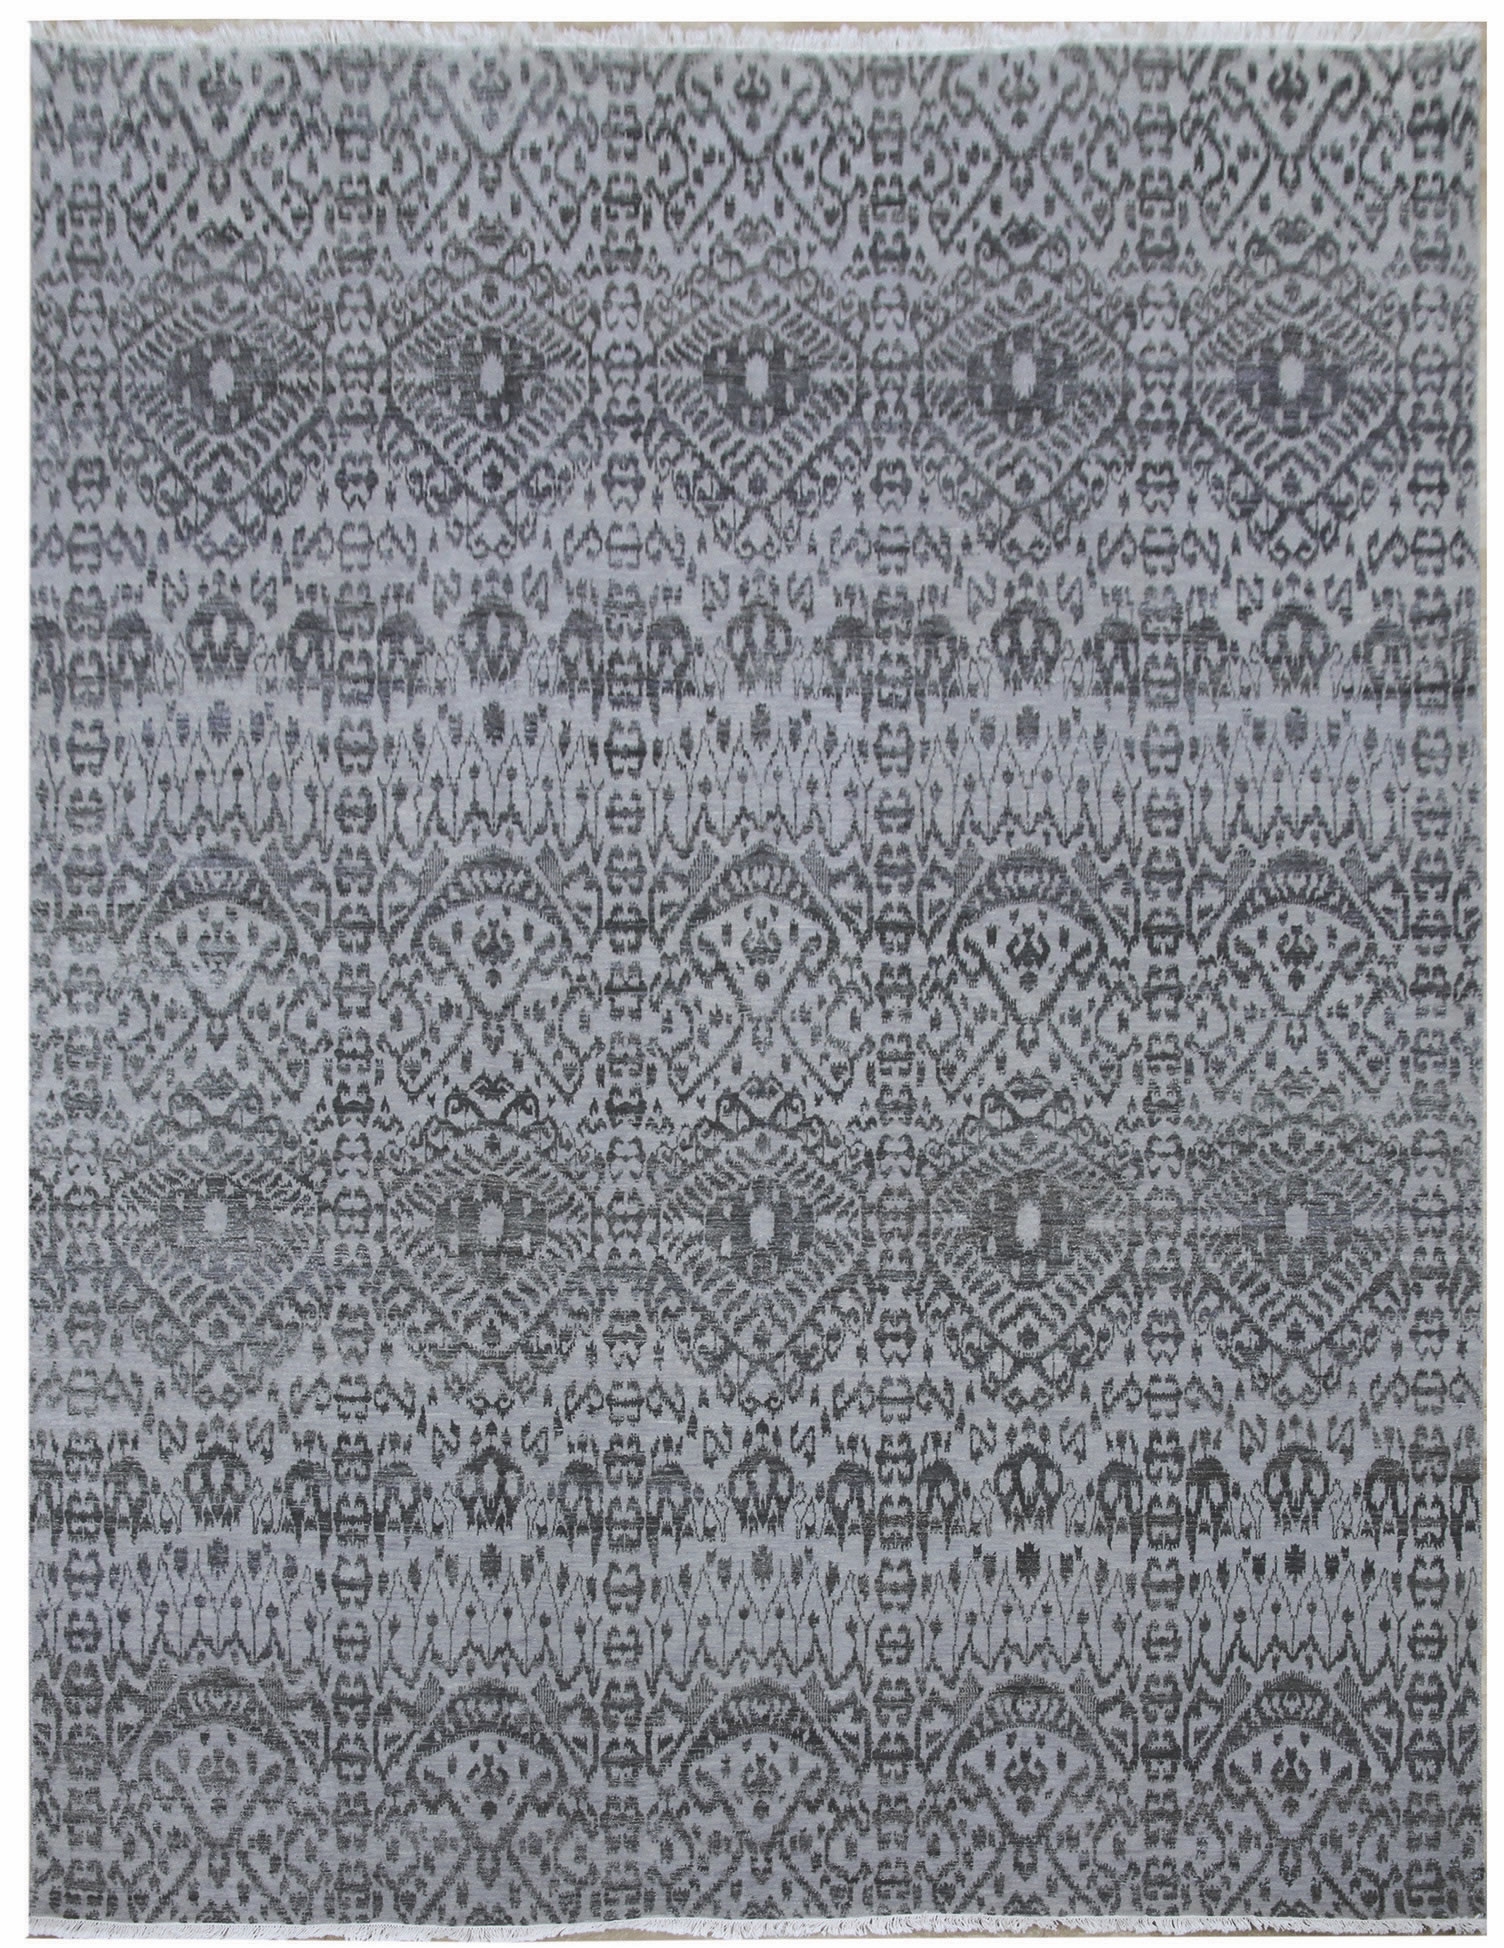 Ručne viazaný kusový koberec Diamond DC-EKT L silver / black - 365x457 cm Diamond Carpets koberce 